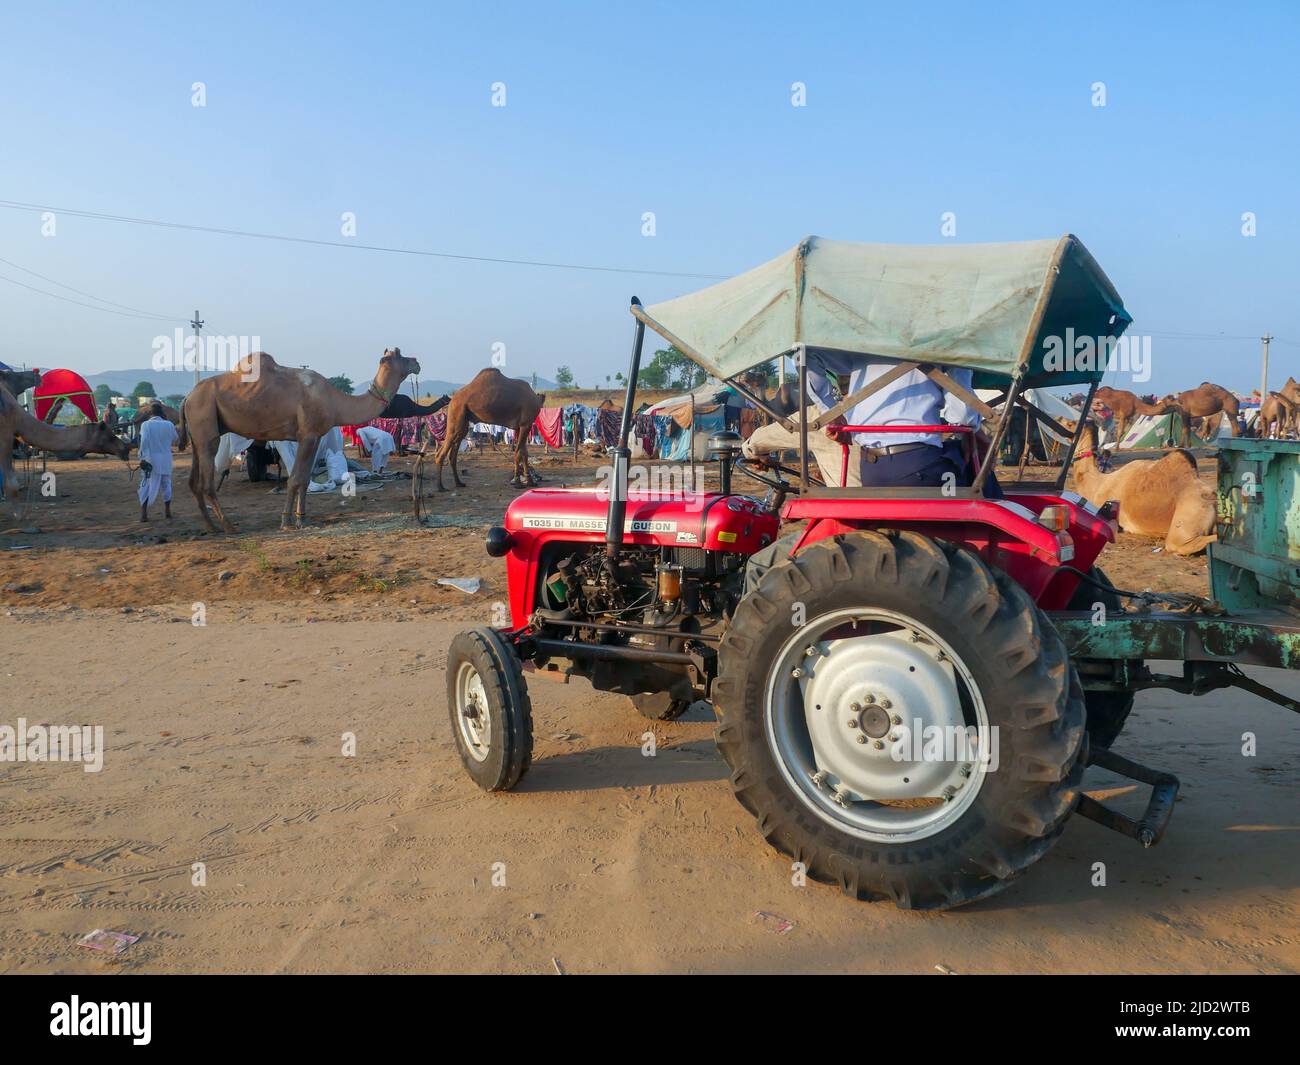 Pushkar, Rajasthan Indien - 04. November 2019 : Traktor läuft auf der Straße in indischen ländlichen Gebieten. Traktor ist Transportmittel in Dörfern Stockfoto